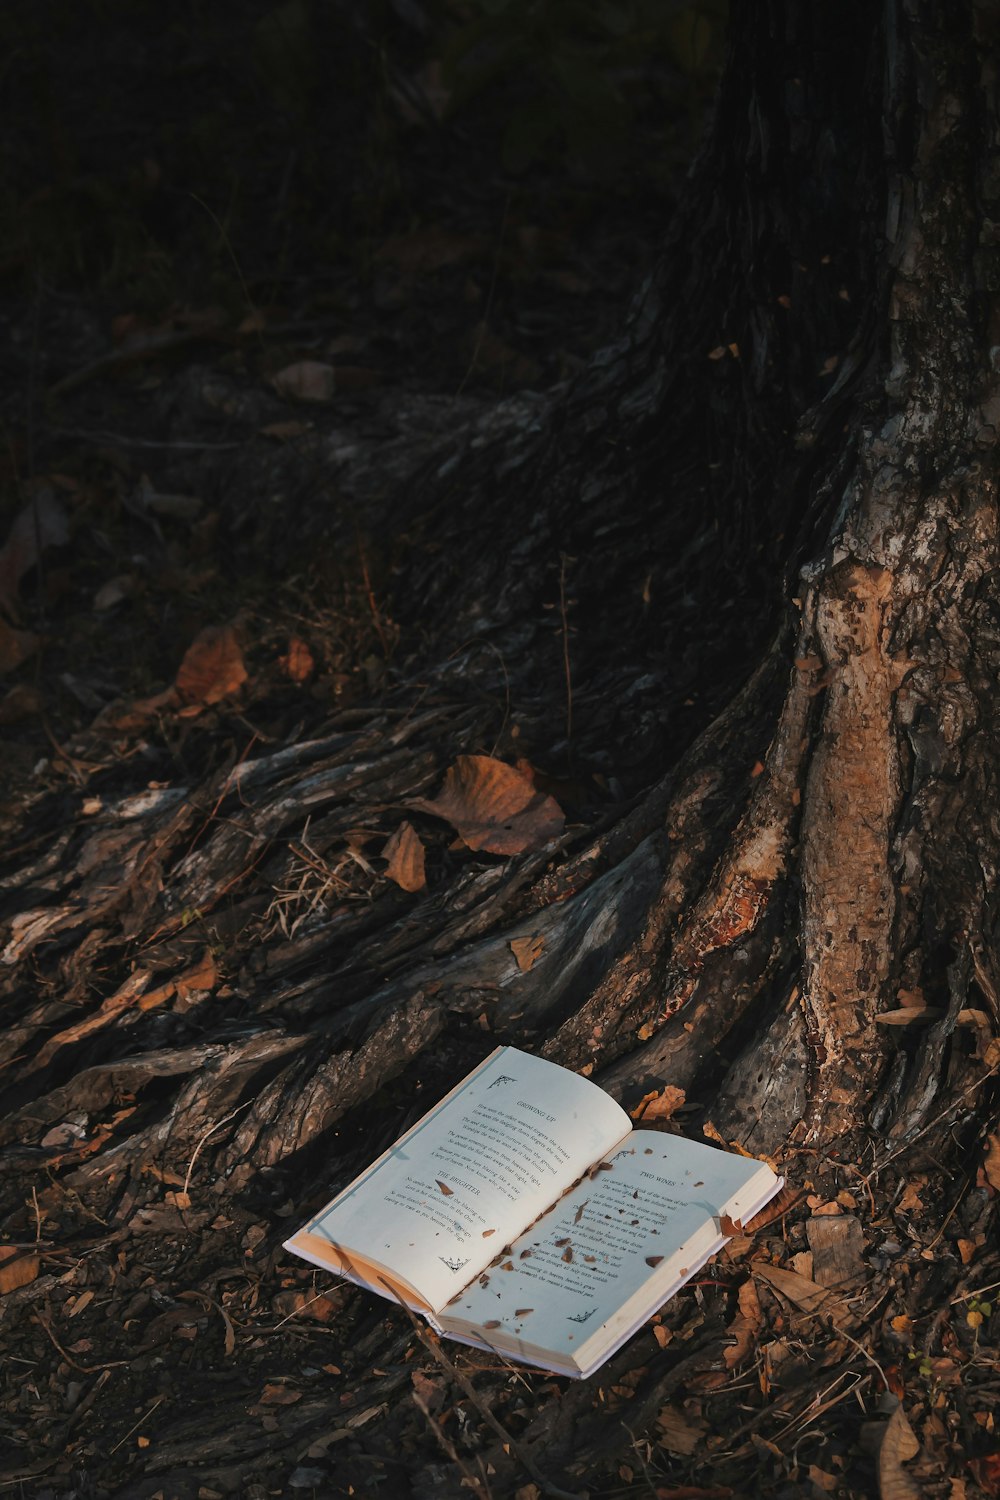 Libro blanco sobre tronco de árbol marrón